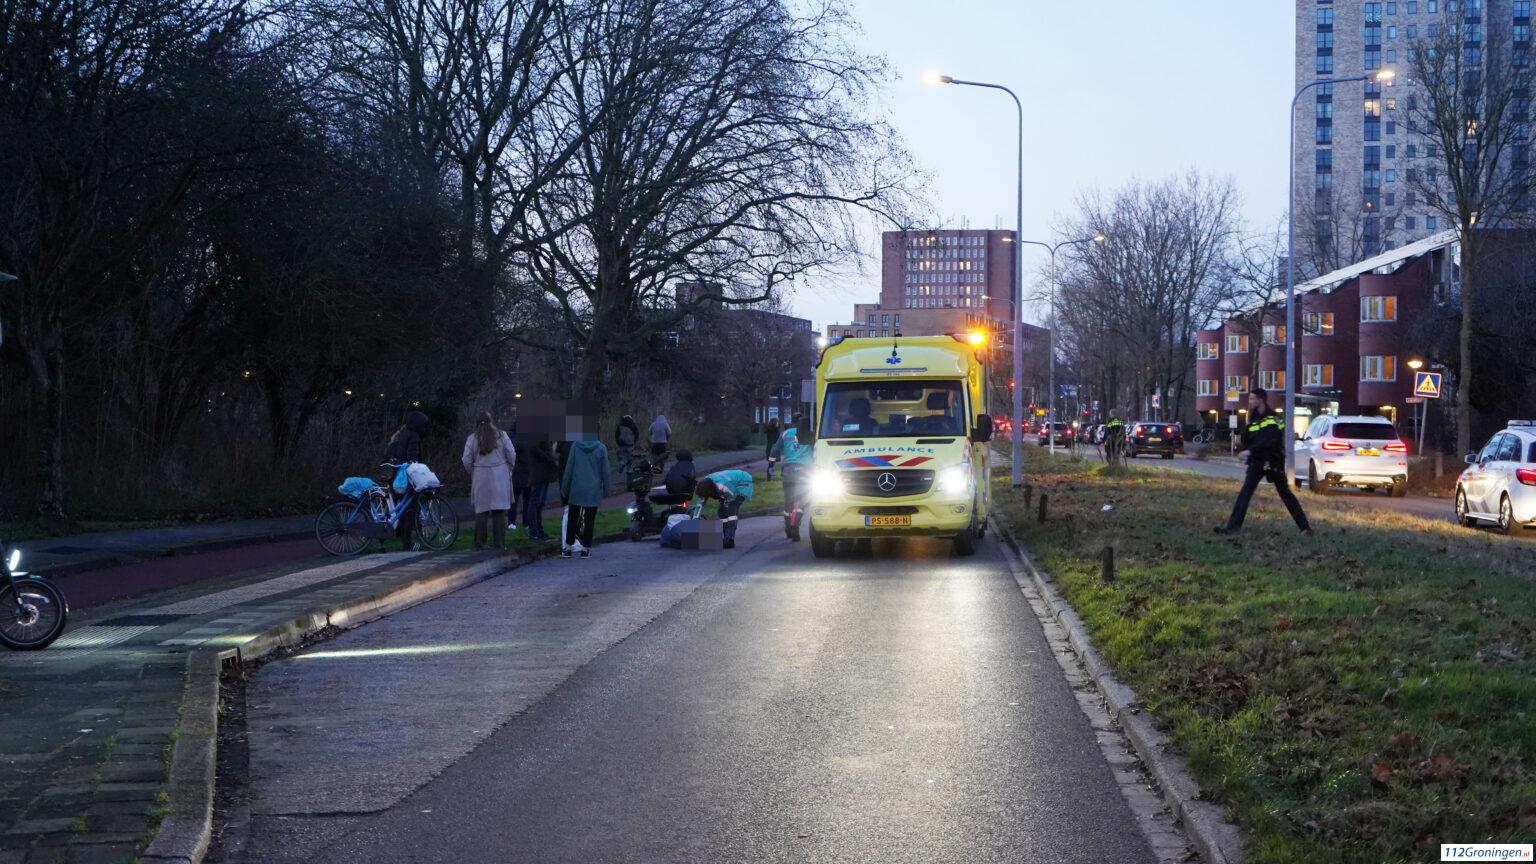 Ongeval met scootmobiel op de Zonnelaan, 1 gewonde.